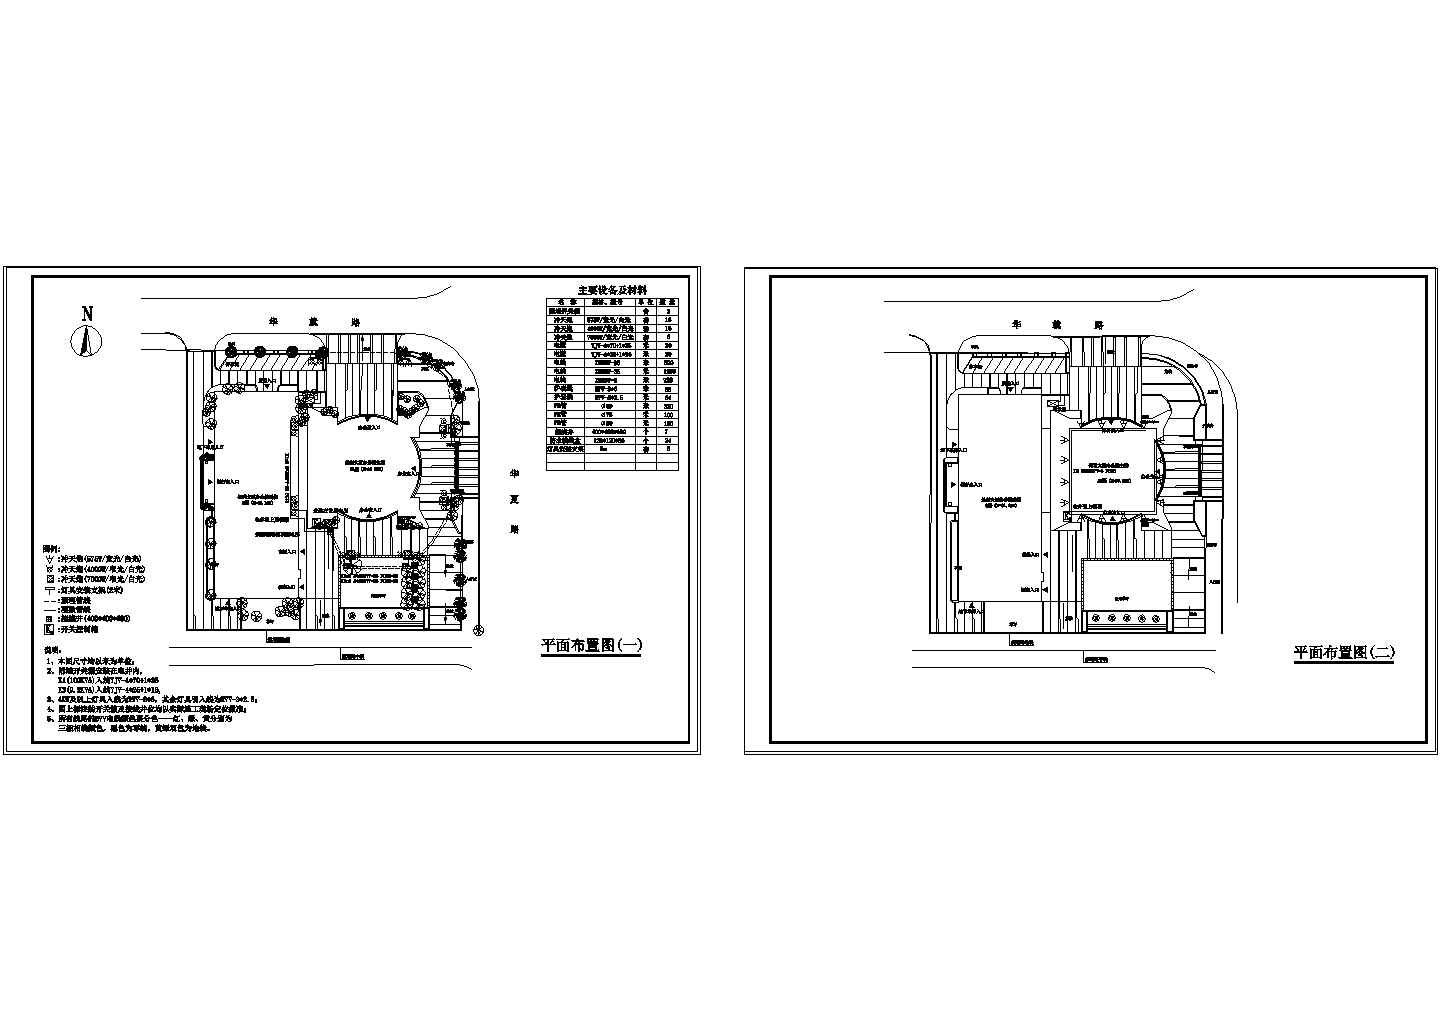 广州市国税大厦泛光照明设计施工图纸(cad)